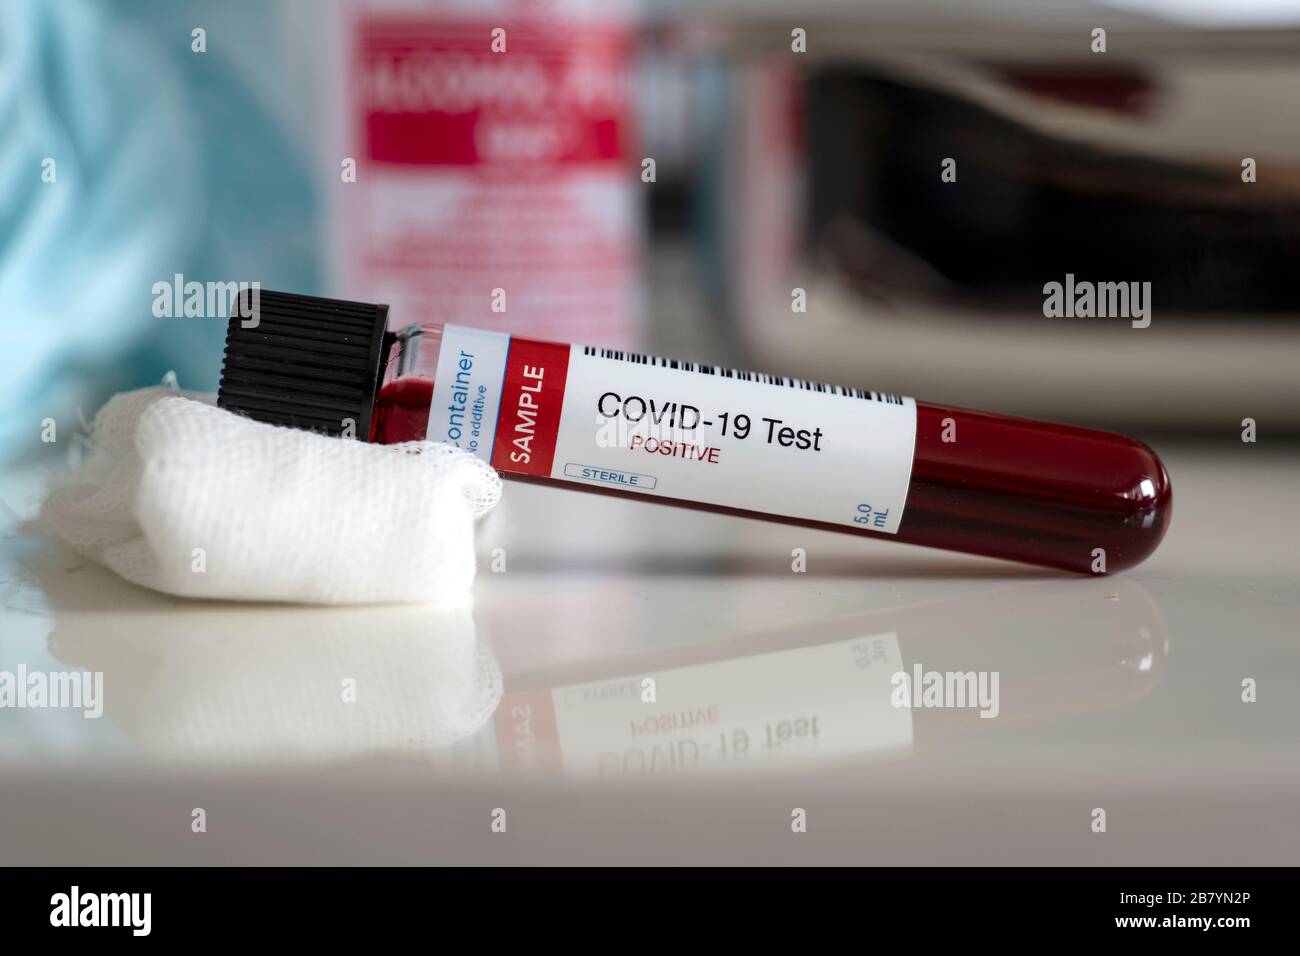 Test de présence de coronavirus. Tube contenant un échantillon de sang qui a testé positif pour COVID-19 Banque D'Images